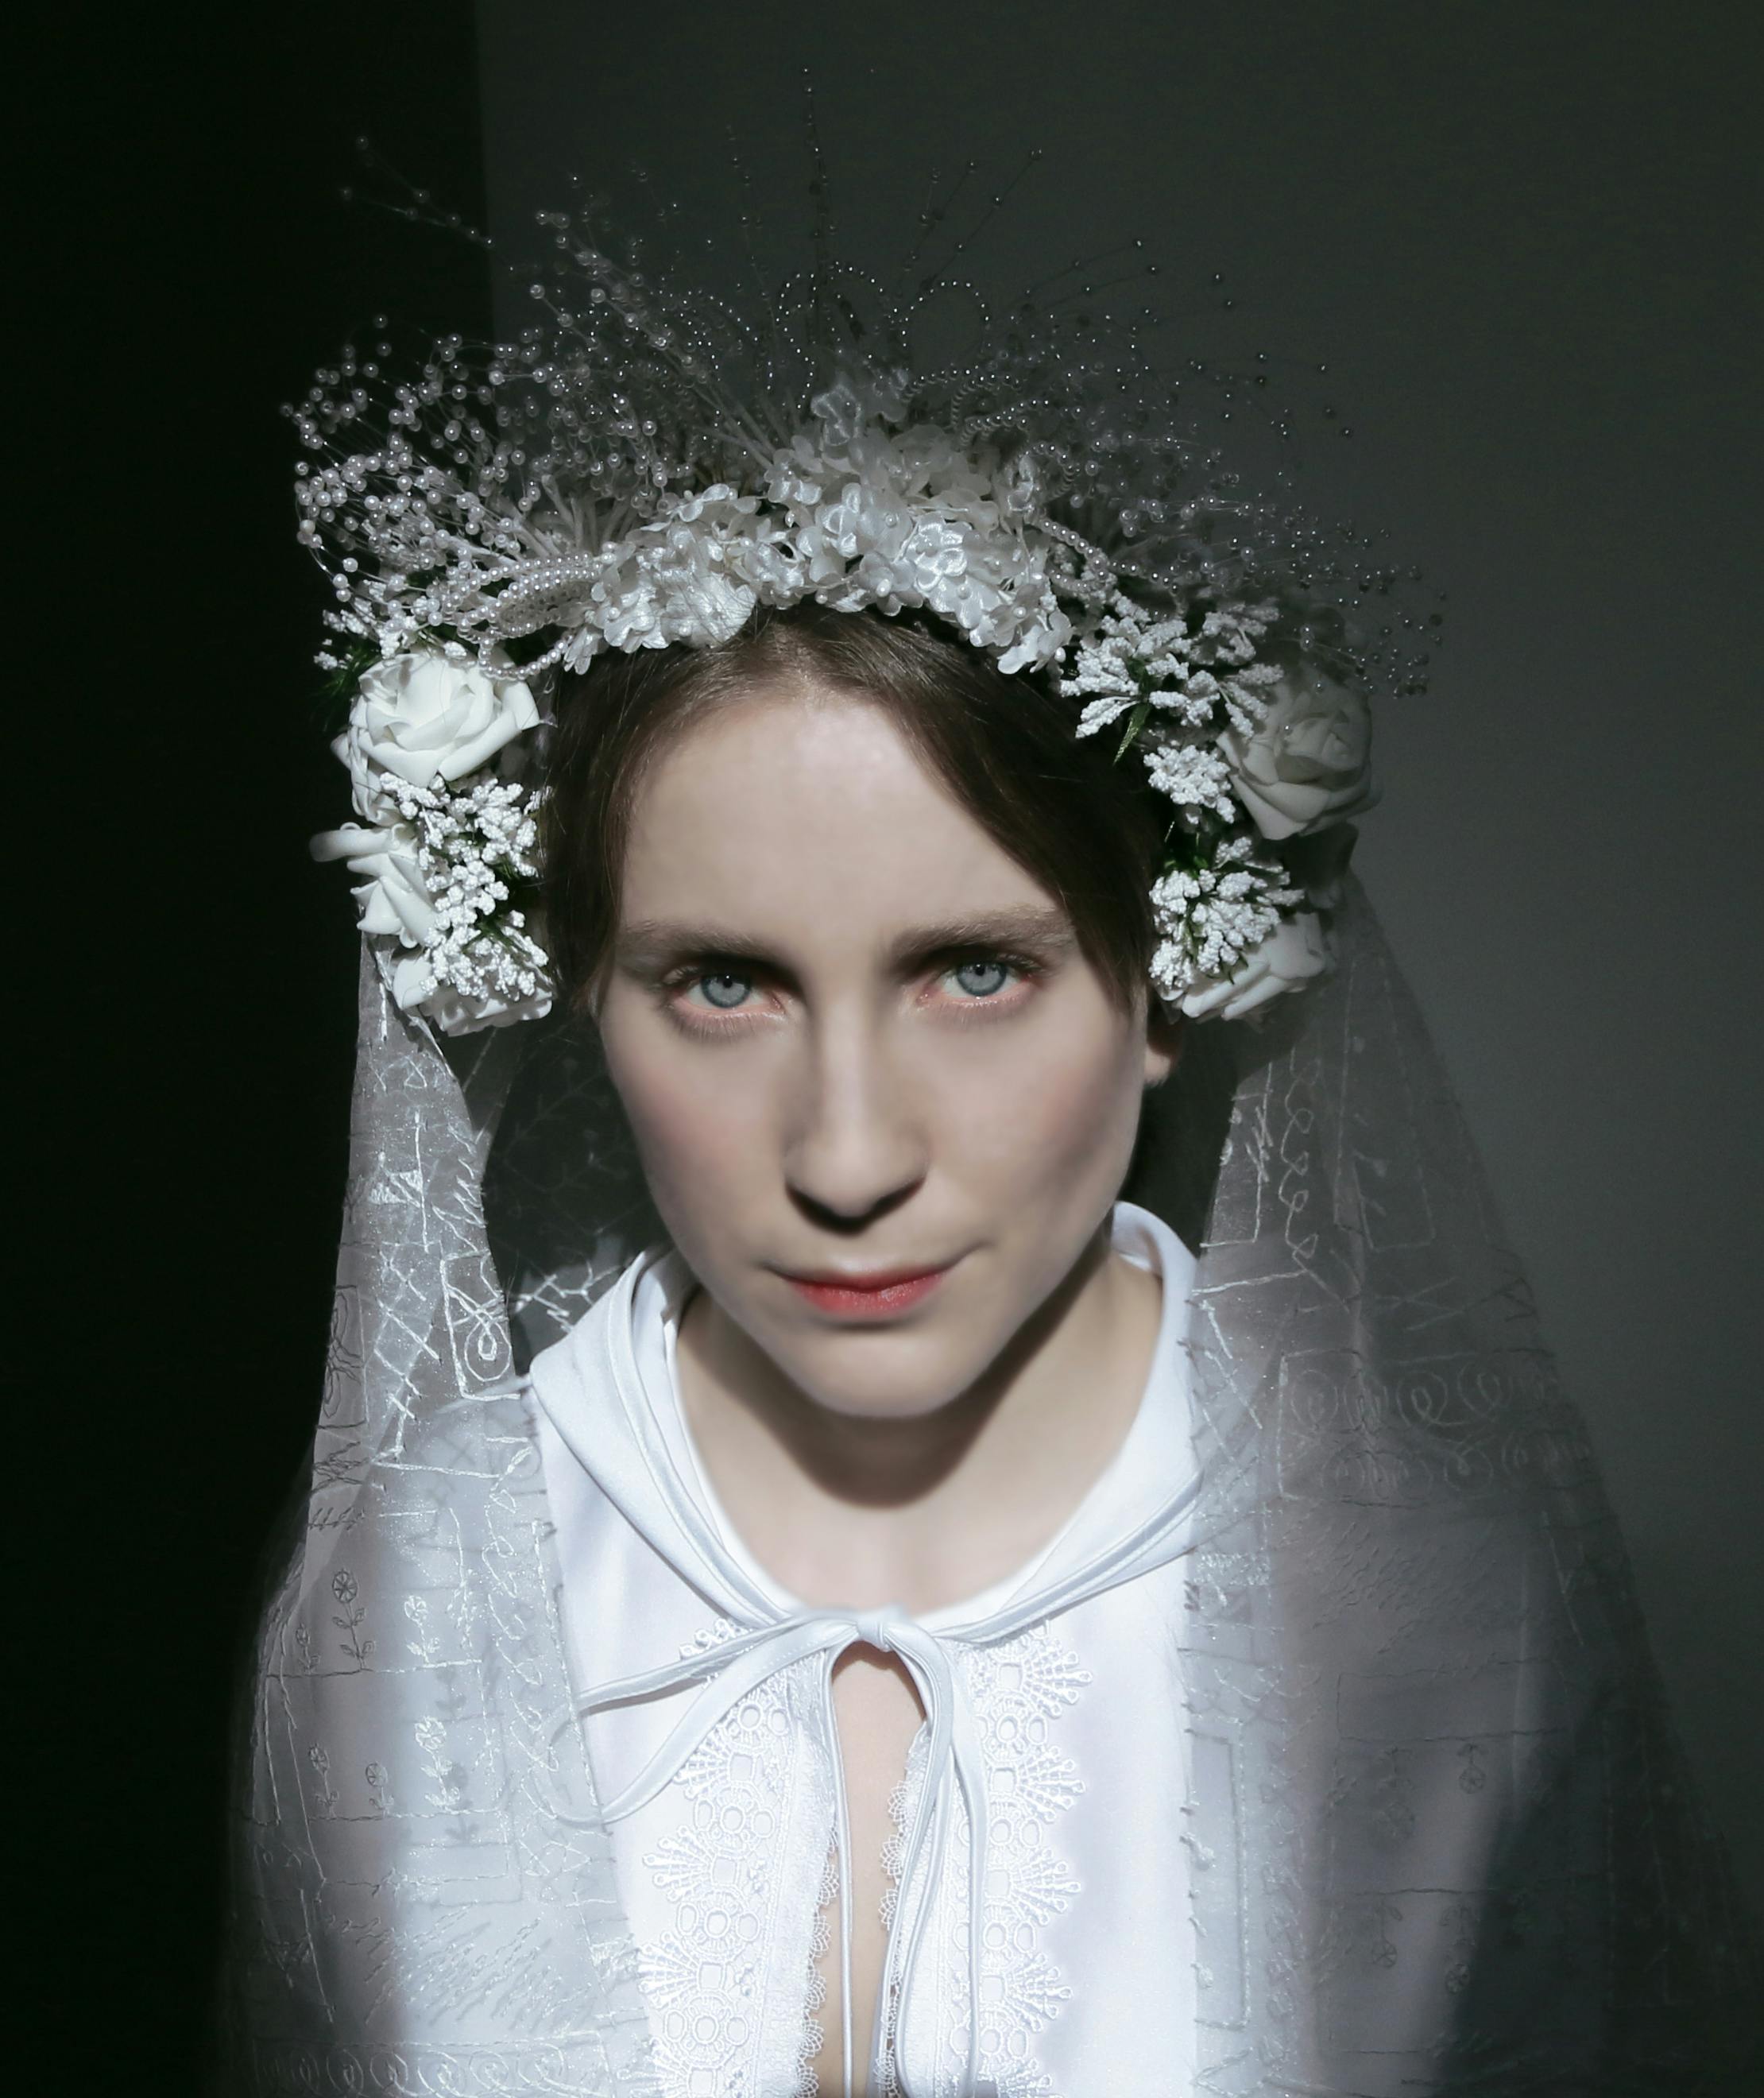 Fotoritratto in mezzobusto di una donna in abito bianco morbido. Sul capo porta una corona di fiori, anch'essi bianchi, dalla quale  scende un lungo velo lavorato.